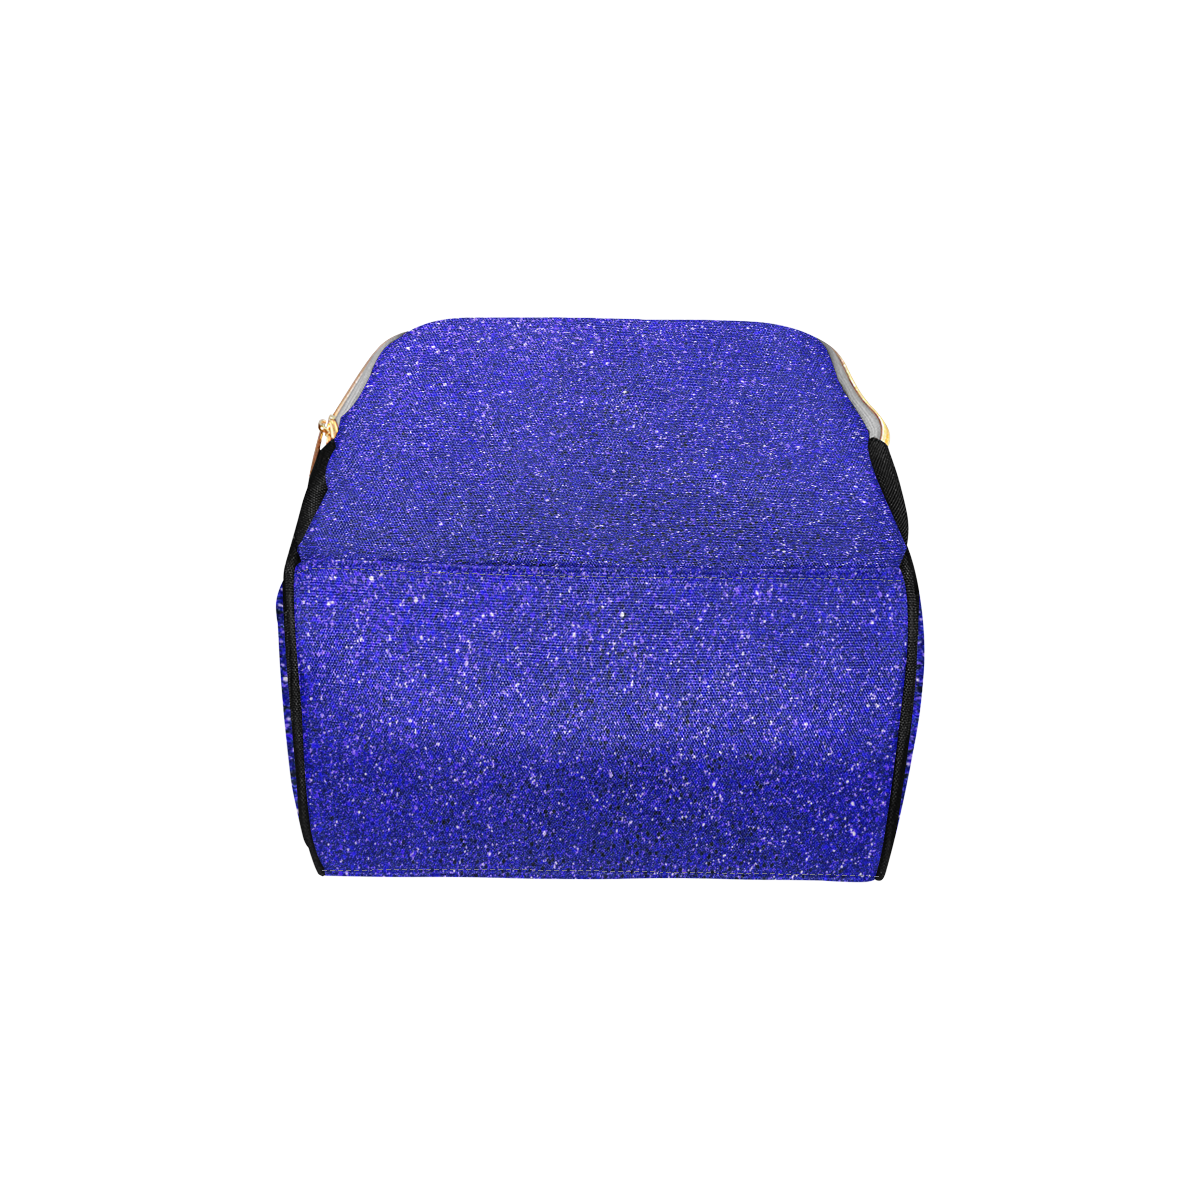 Blue Glitter Multi-Function Diaper Backpack/Diaper Bag (Model 1688)